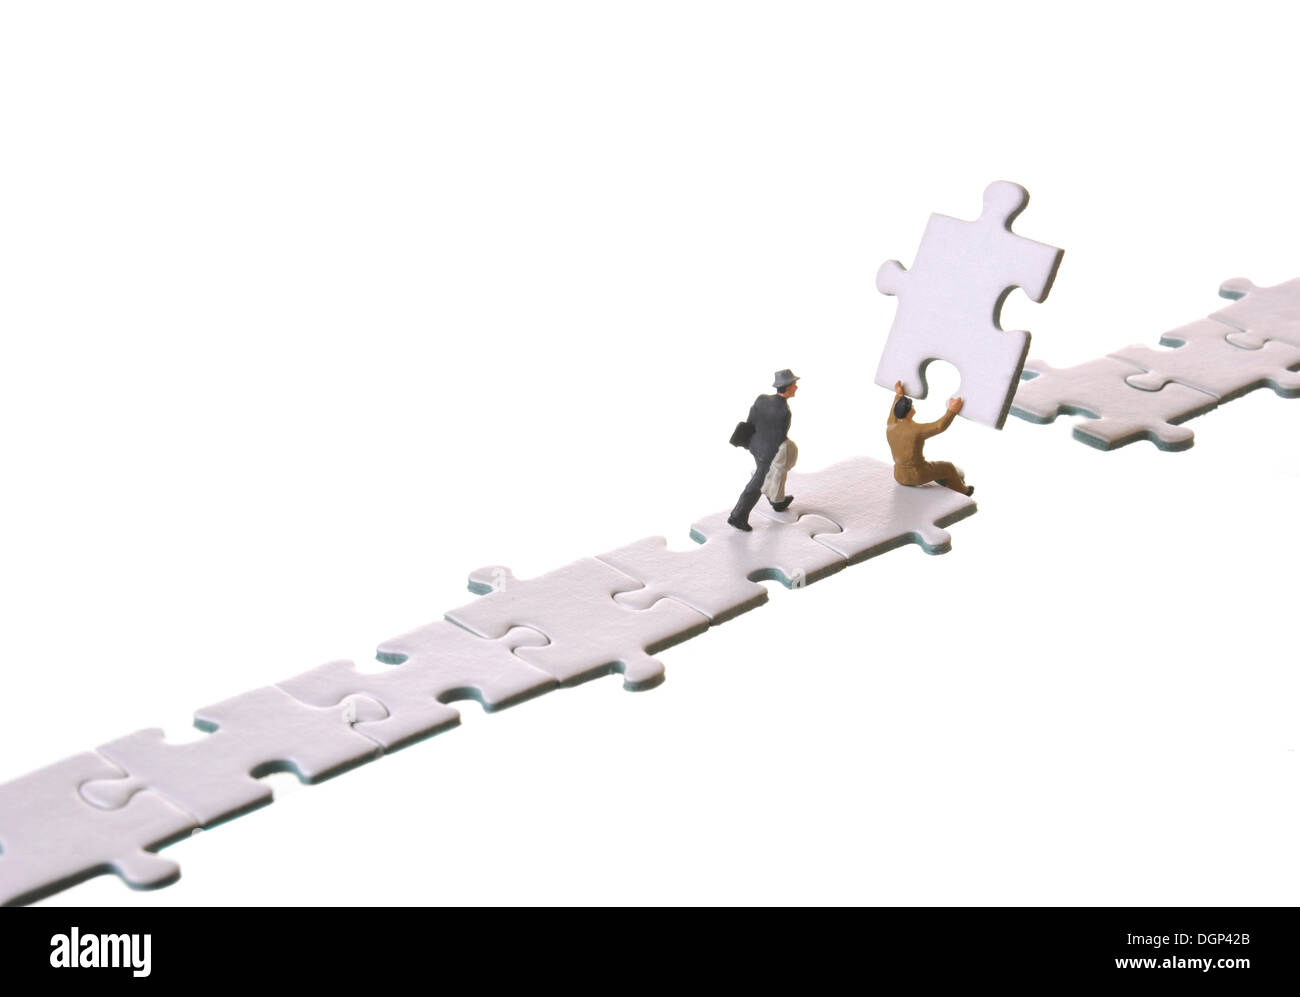 Le figure di uomini di affari di costruire un ponte con i pezzi del puzzle, immagine simbolica per i collegamenti Foto Stock